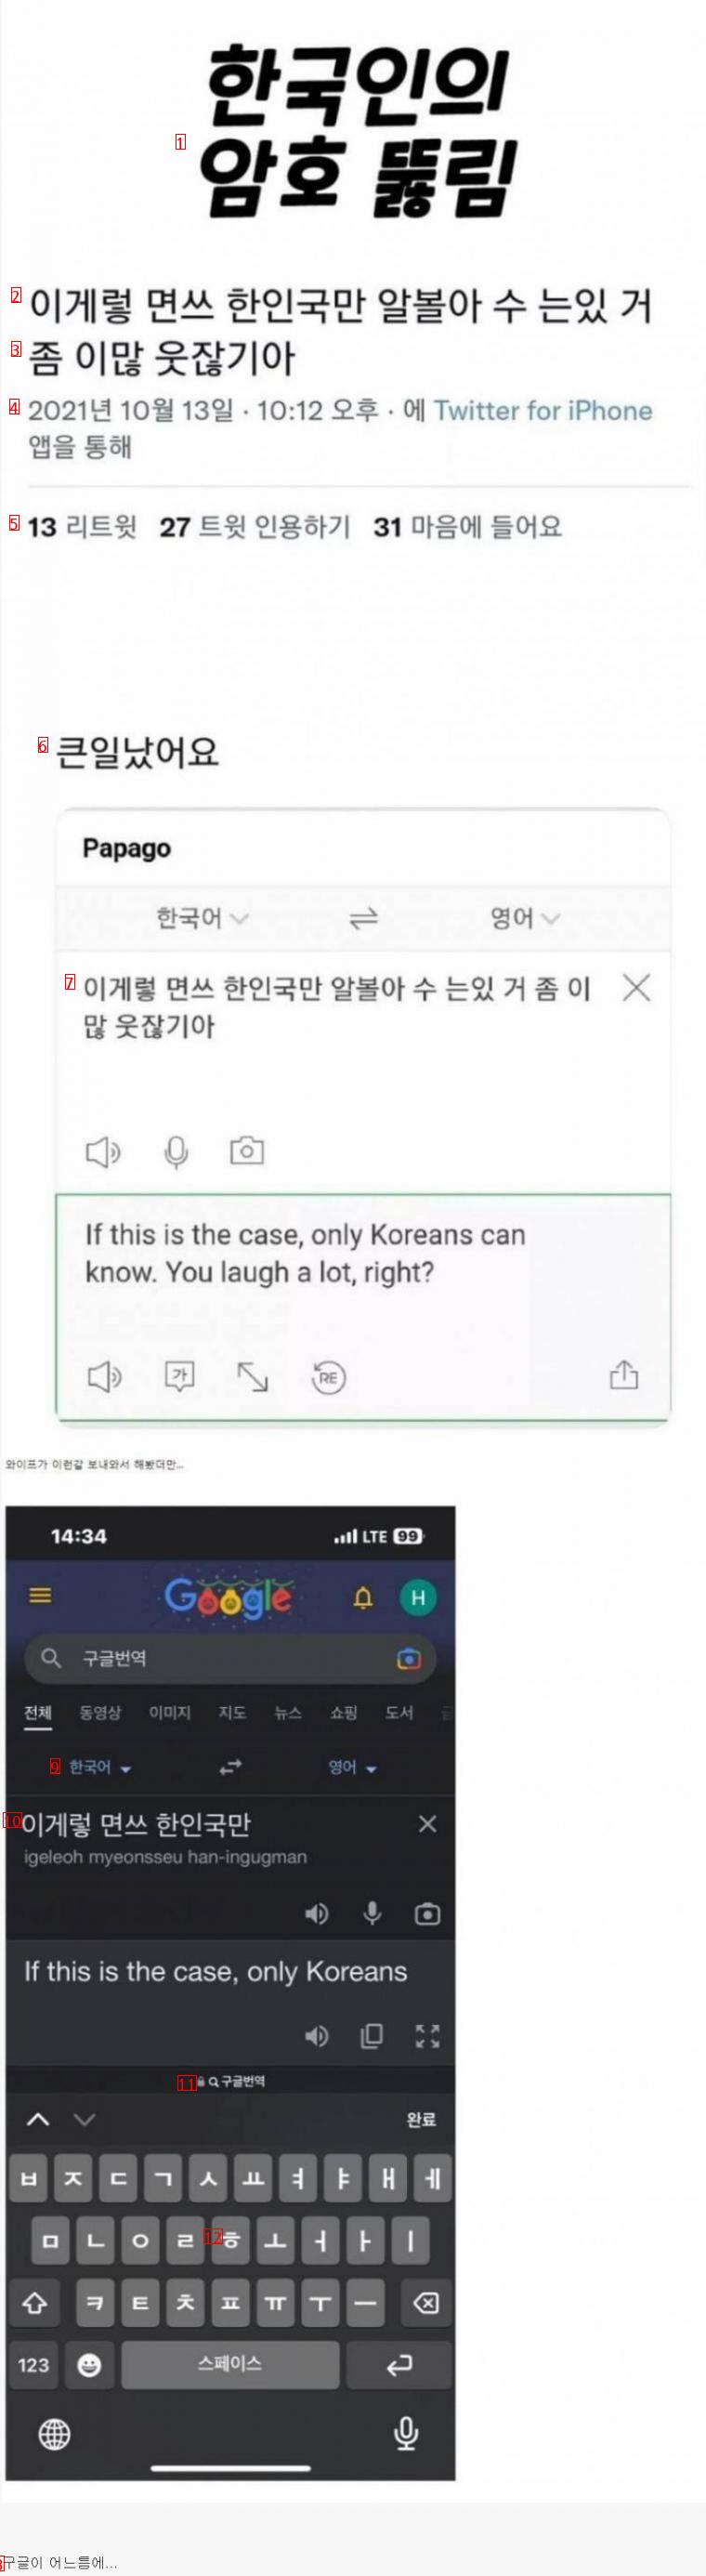 한국인만의 암호가 뚫림ㄷㄷㄷ